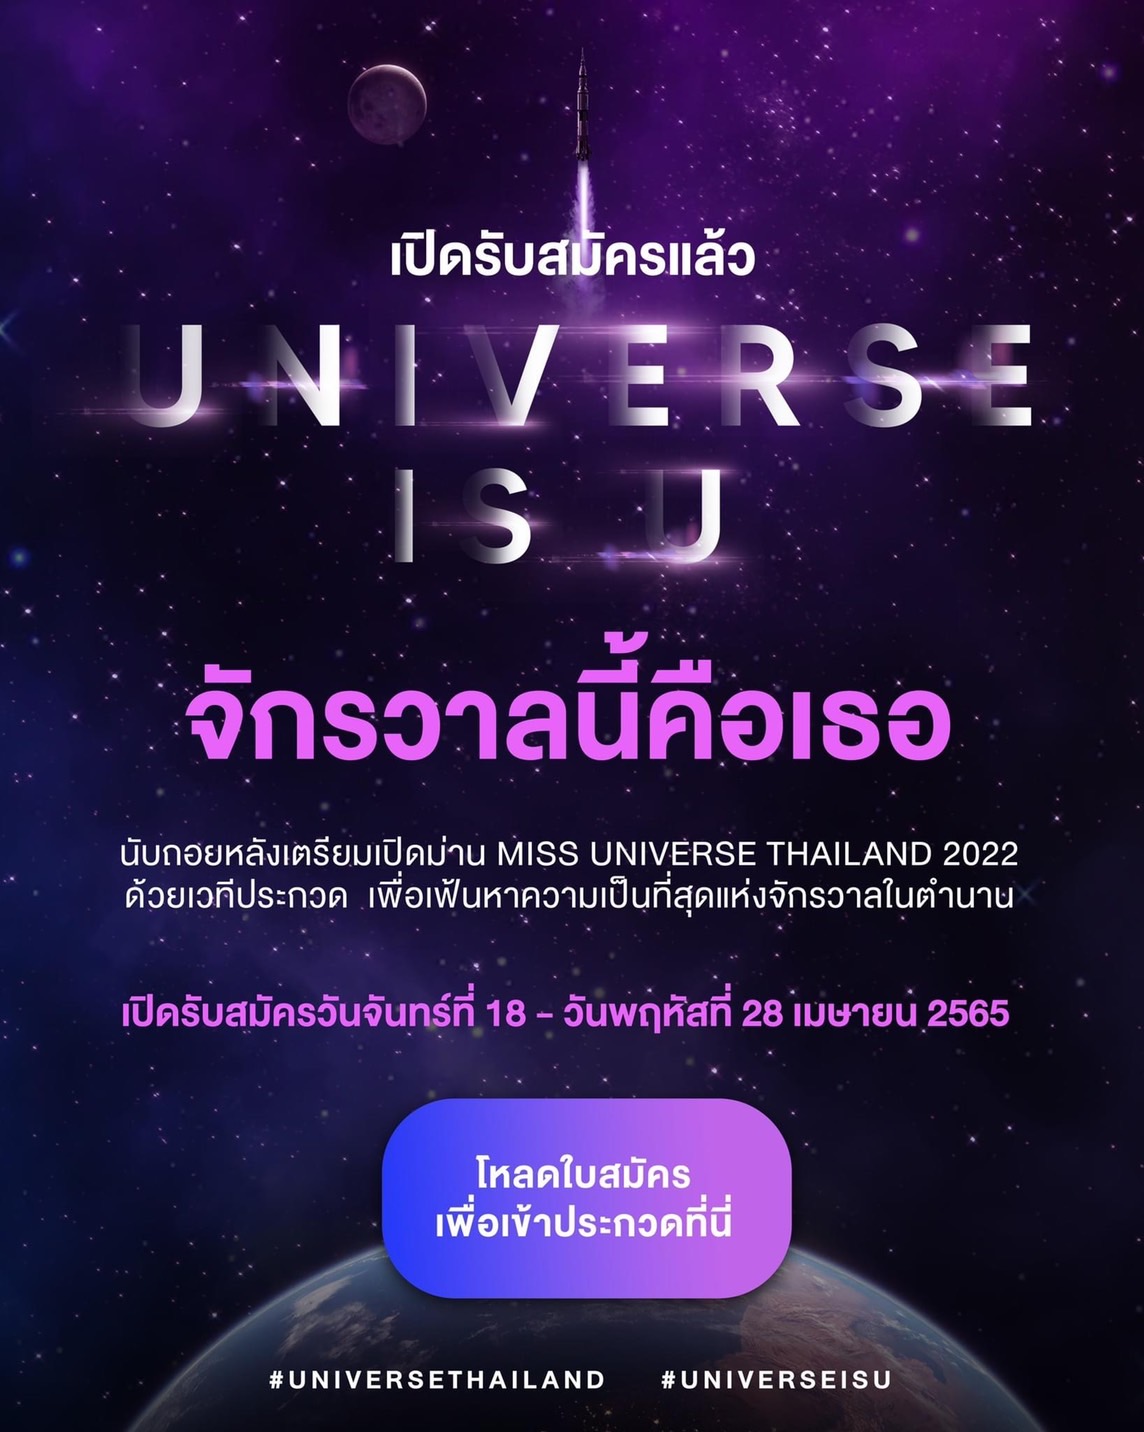 ปุ้ย ปิยาภรณ์ เผยคอนเซ็ปต์ UNIVERSE IS U จักรวาลนี้คือเธอ 